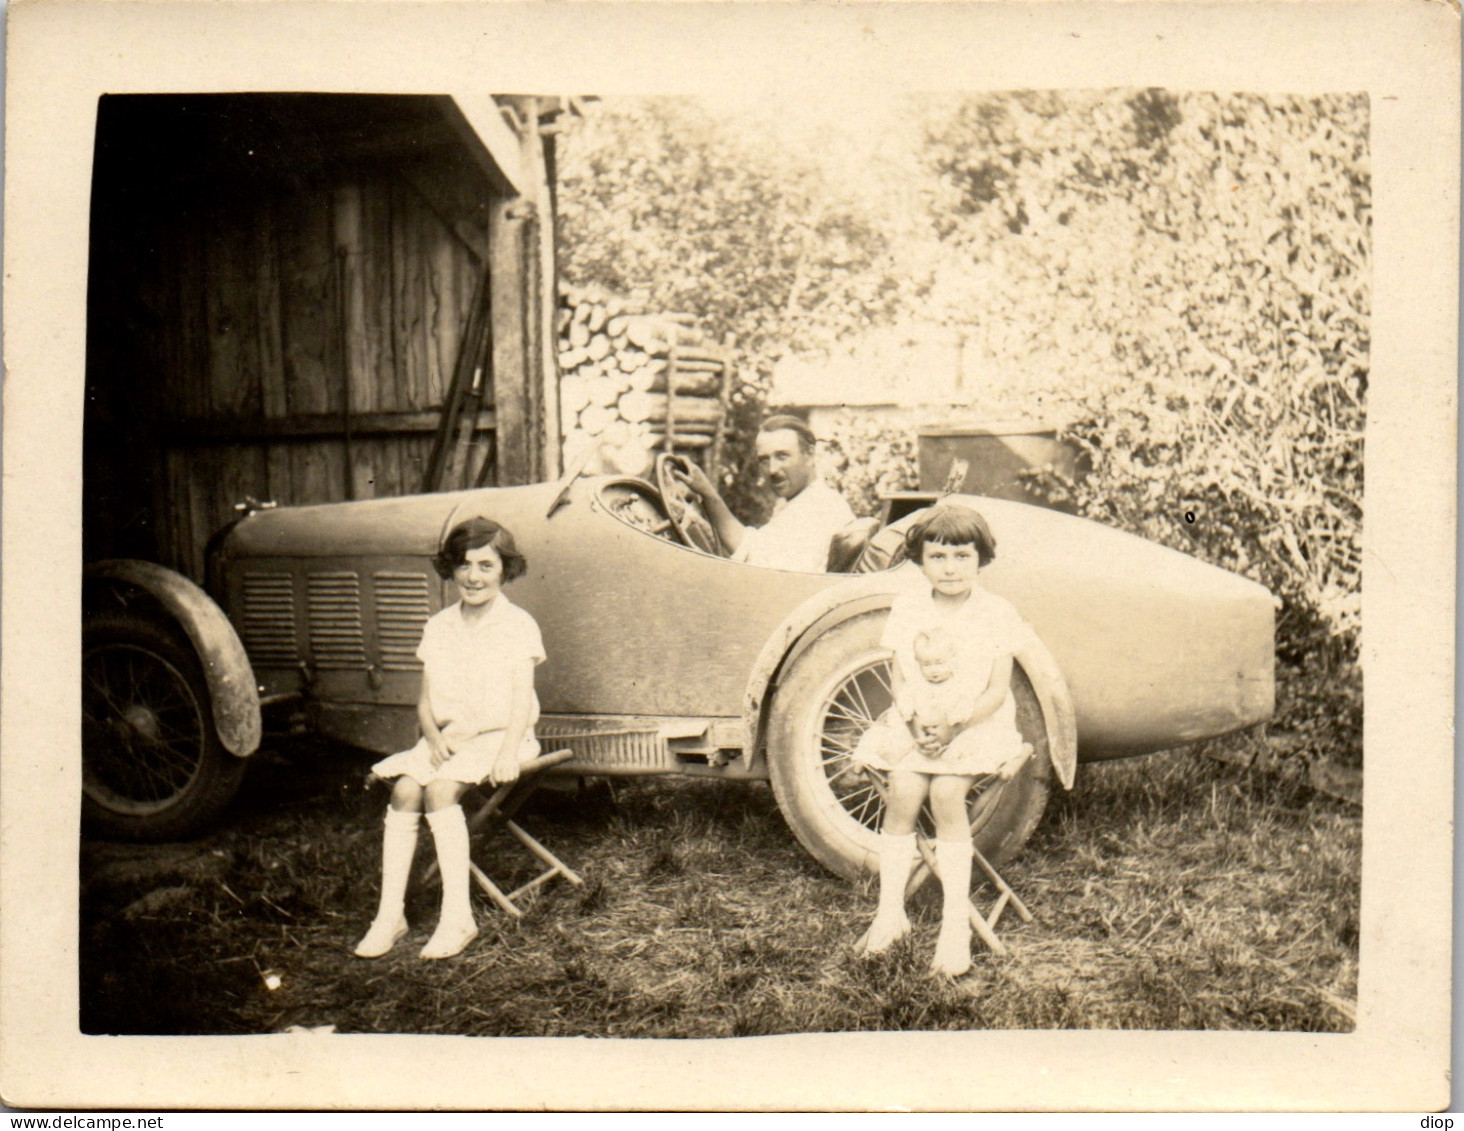 Photographie Photo Vintage Snapshot Amateur Automobile Voiture Auto Cabriolet  - Automobiles